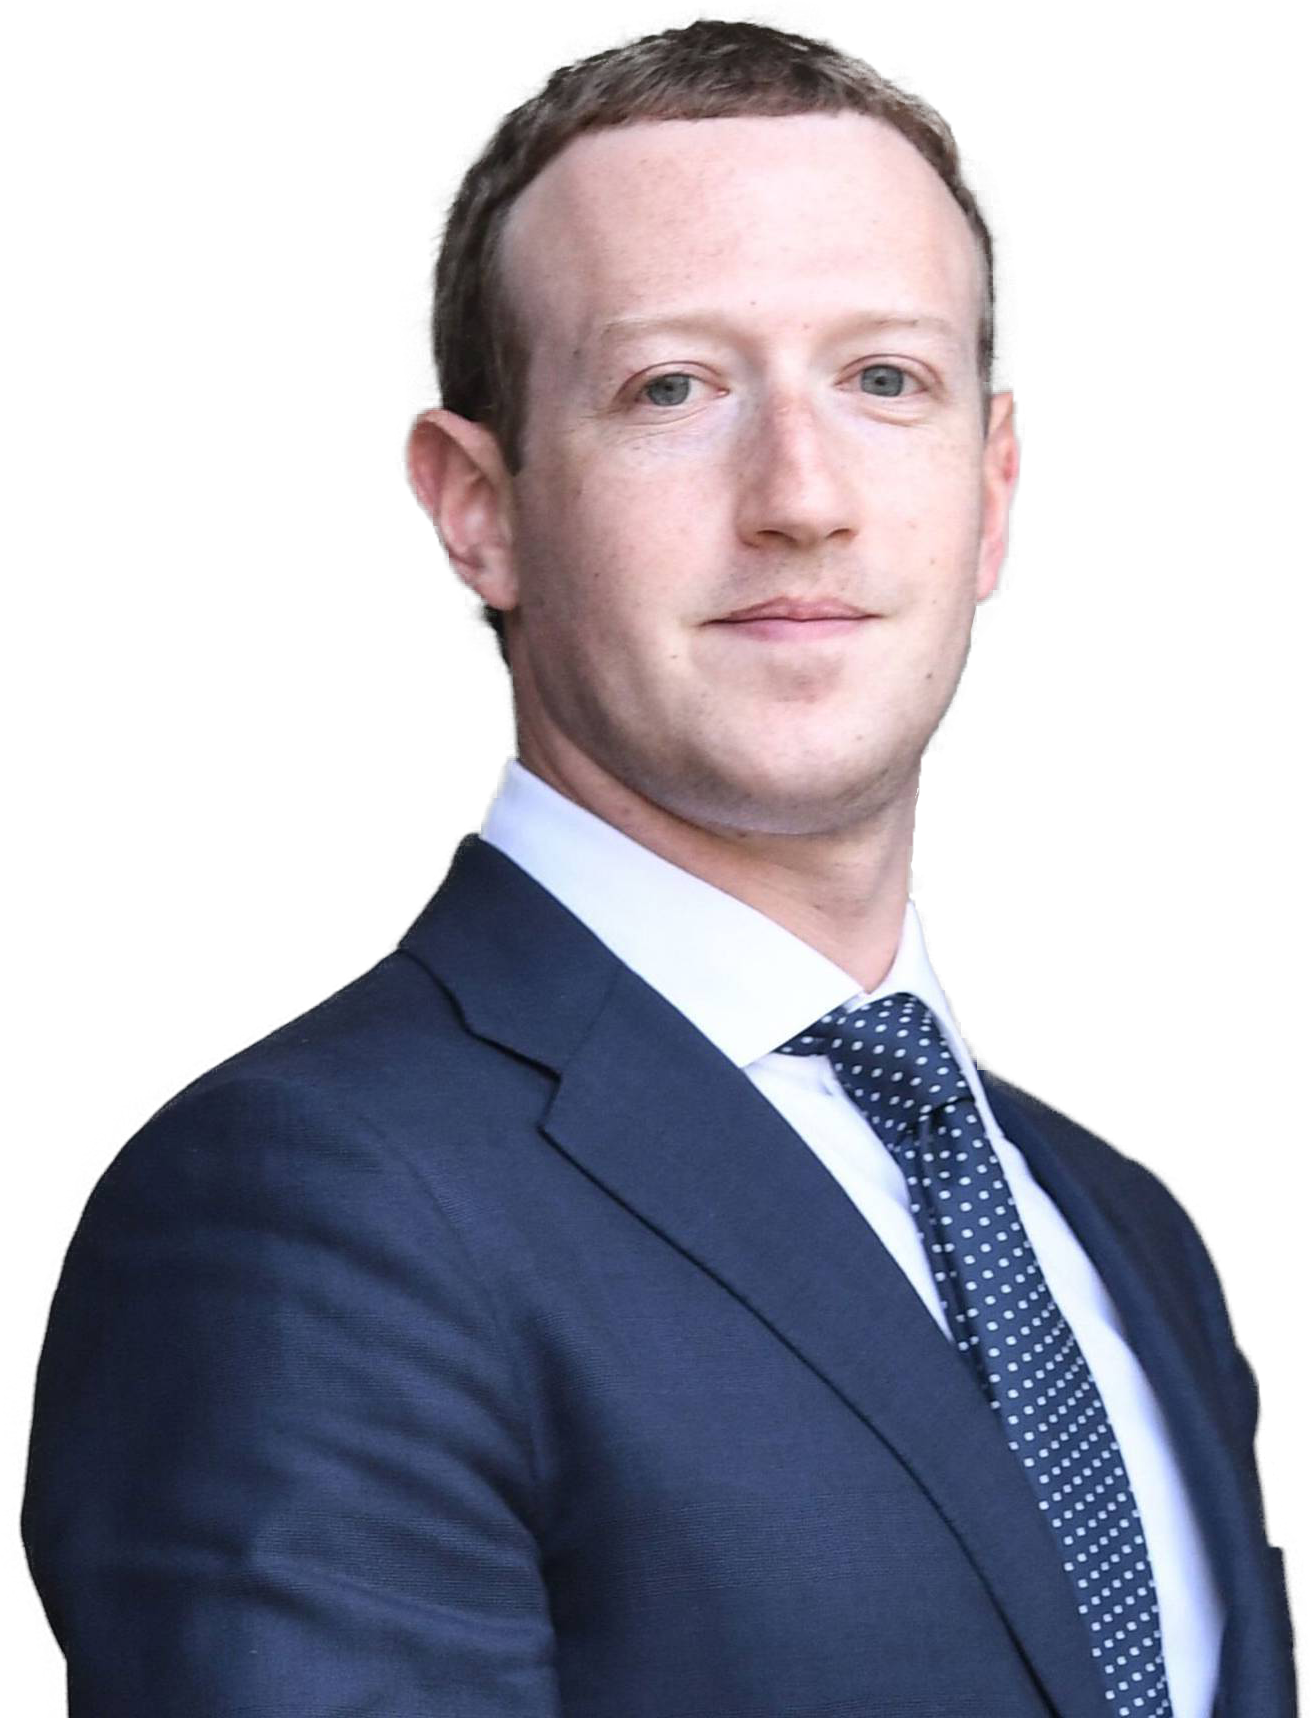 Mark Zuckerberg Bio, family, net worth